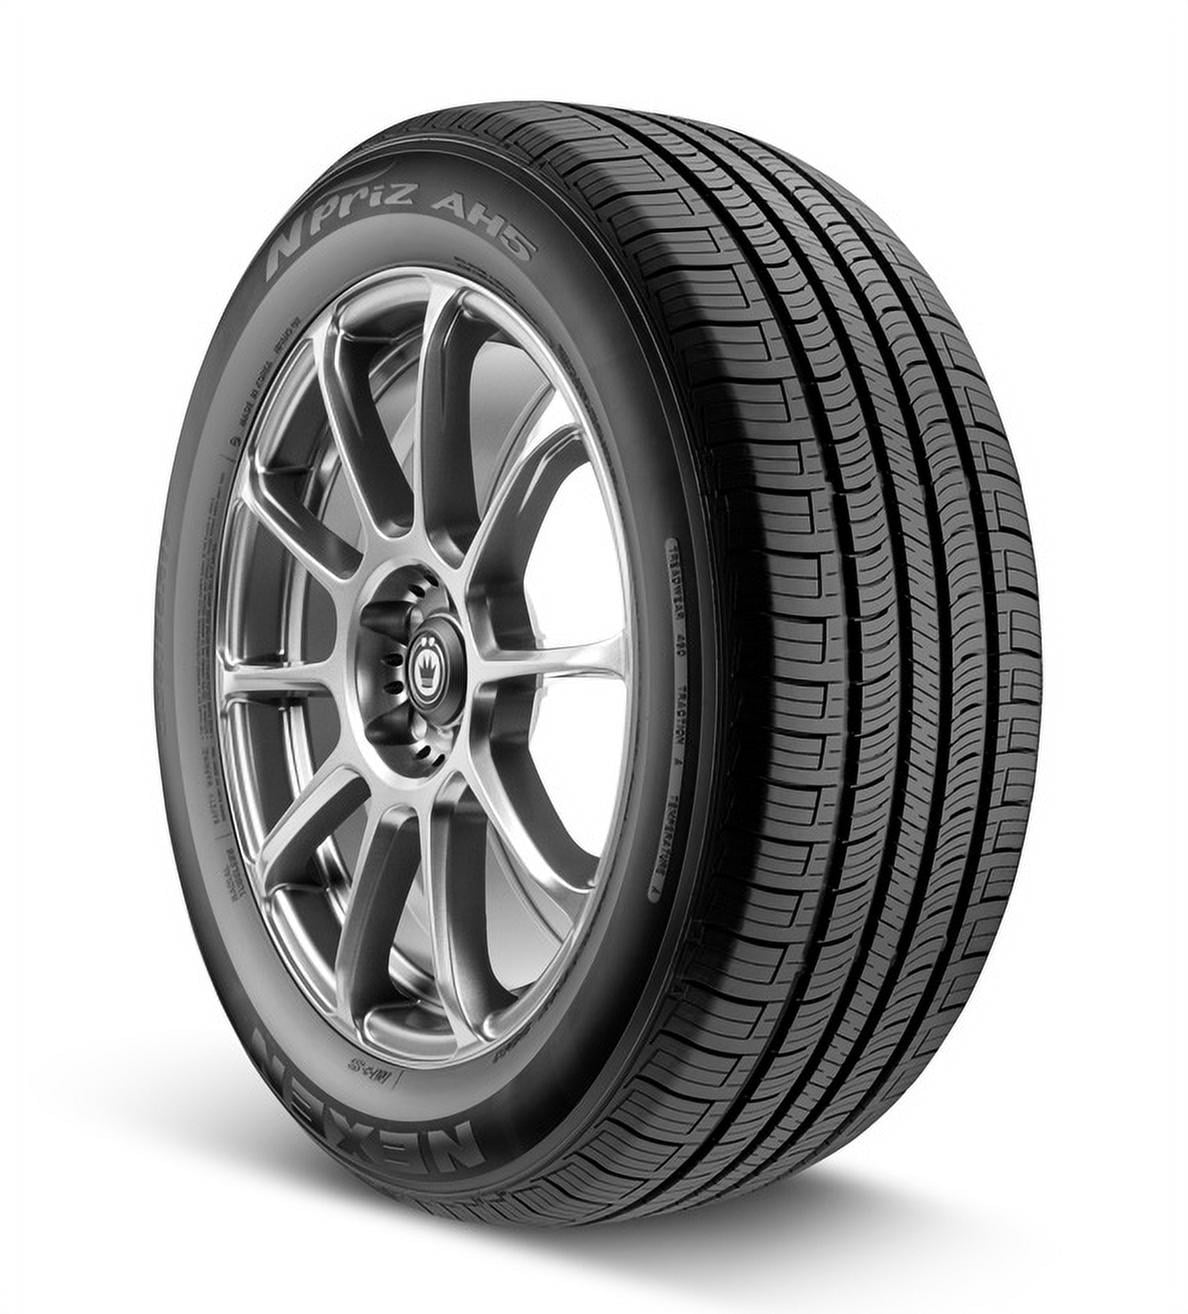 Nexen N'Priz AH5 All-Season Tire - 195/65R15 89T